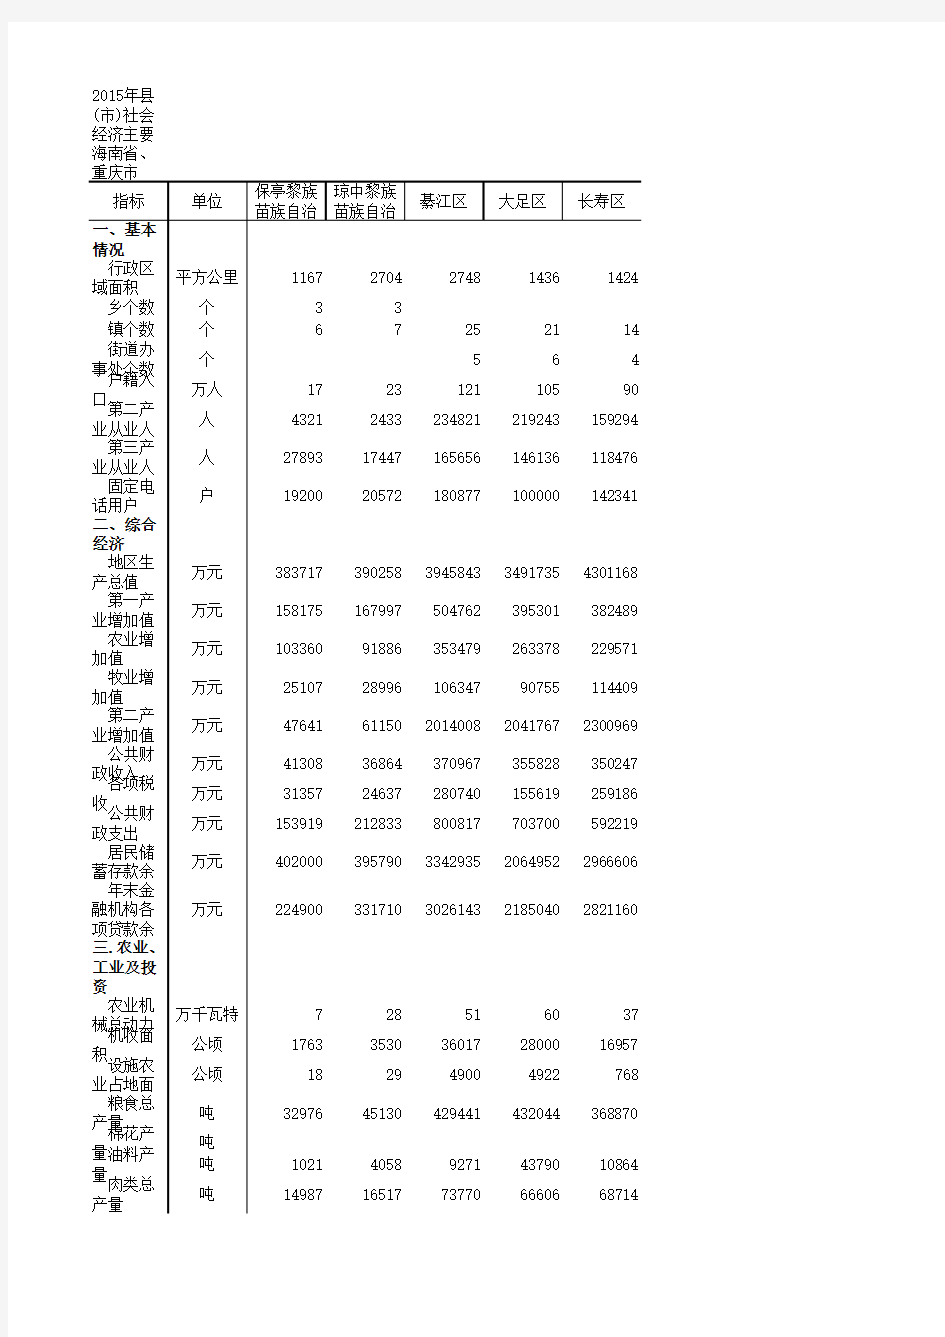 重庆市2015年县域统计年鉴